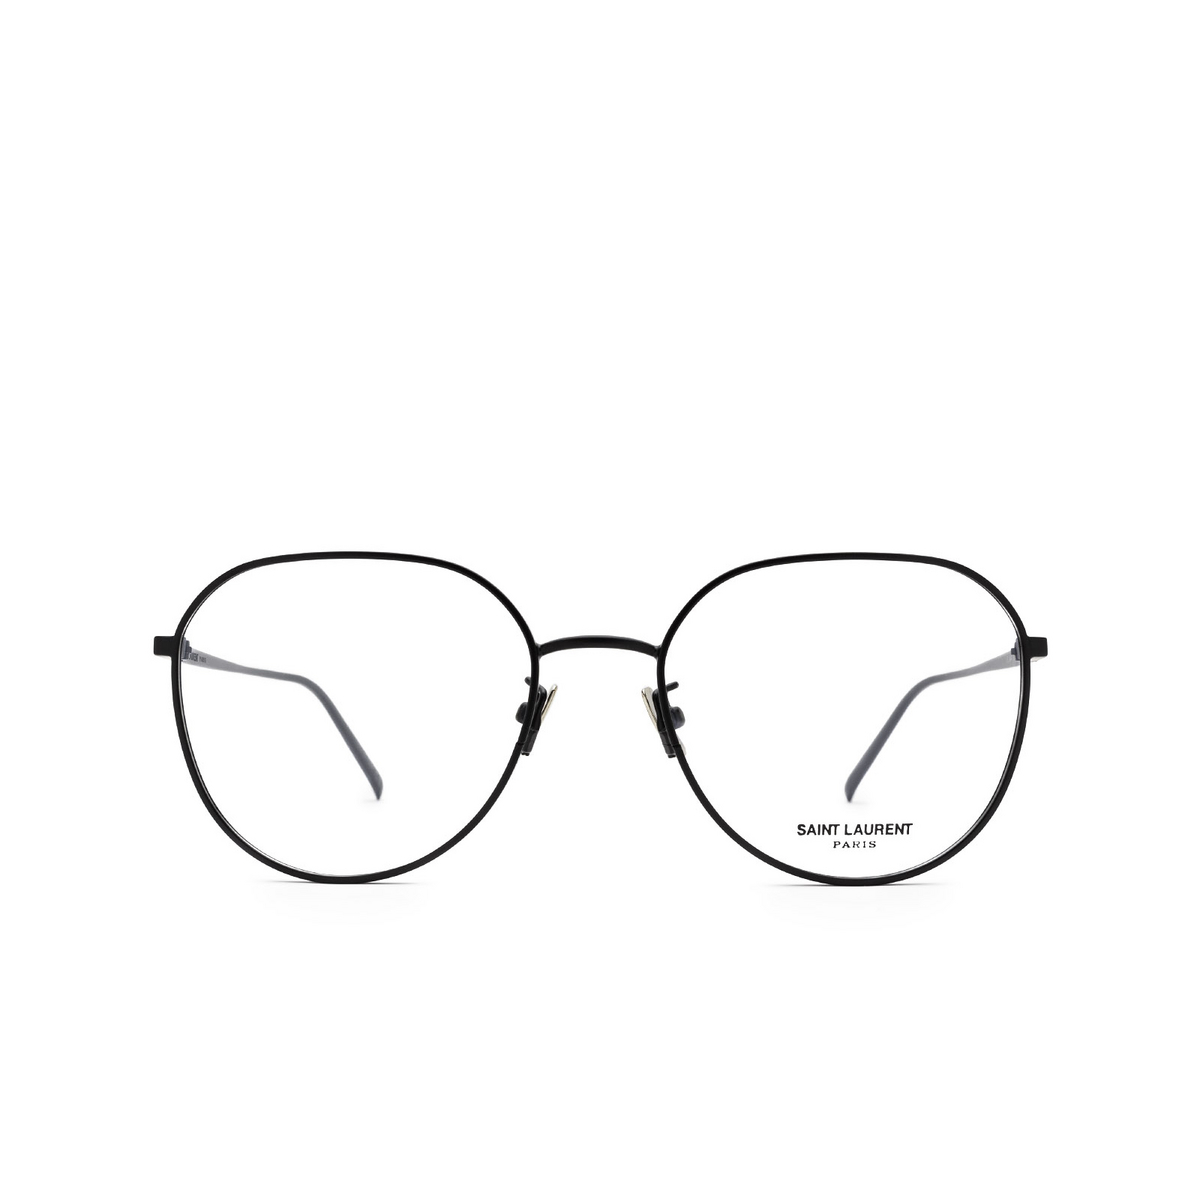 Saint Laurent® Round Eyeglasses: SL 484 color 001 Black - front view